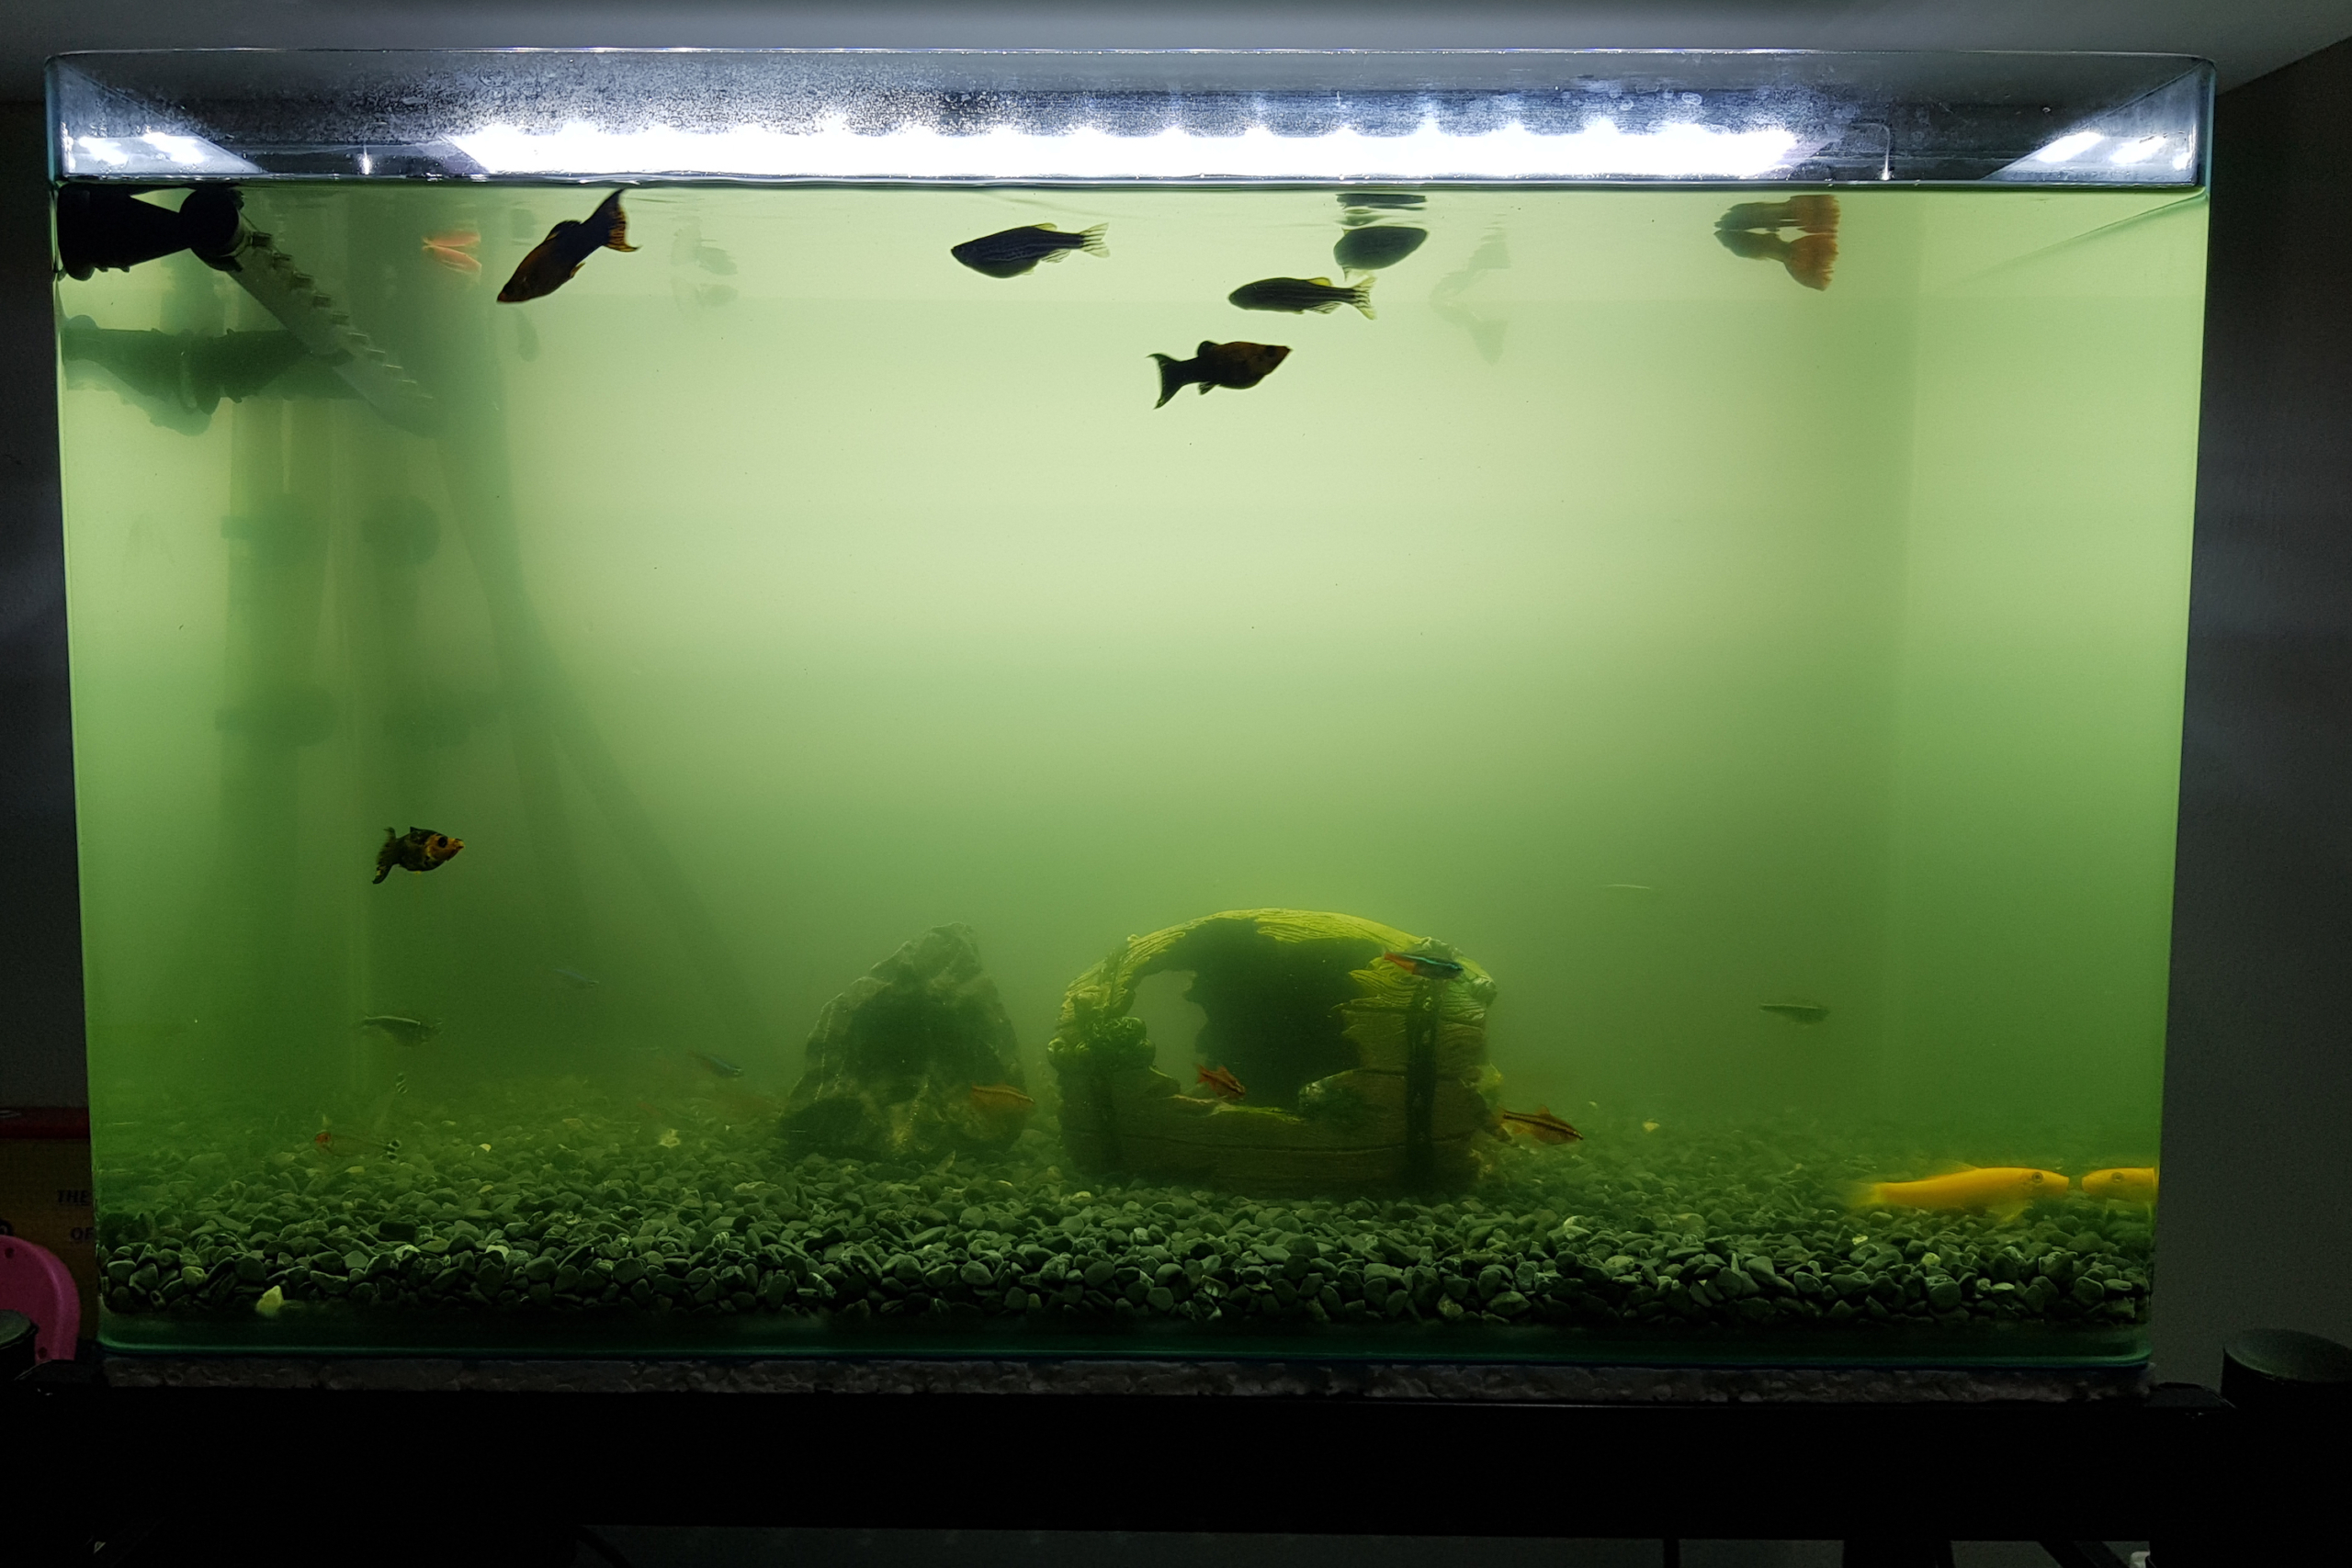 Cloudy aquarium with fish